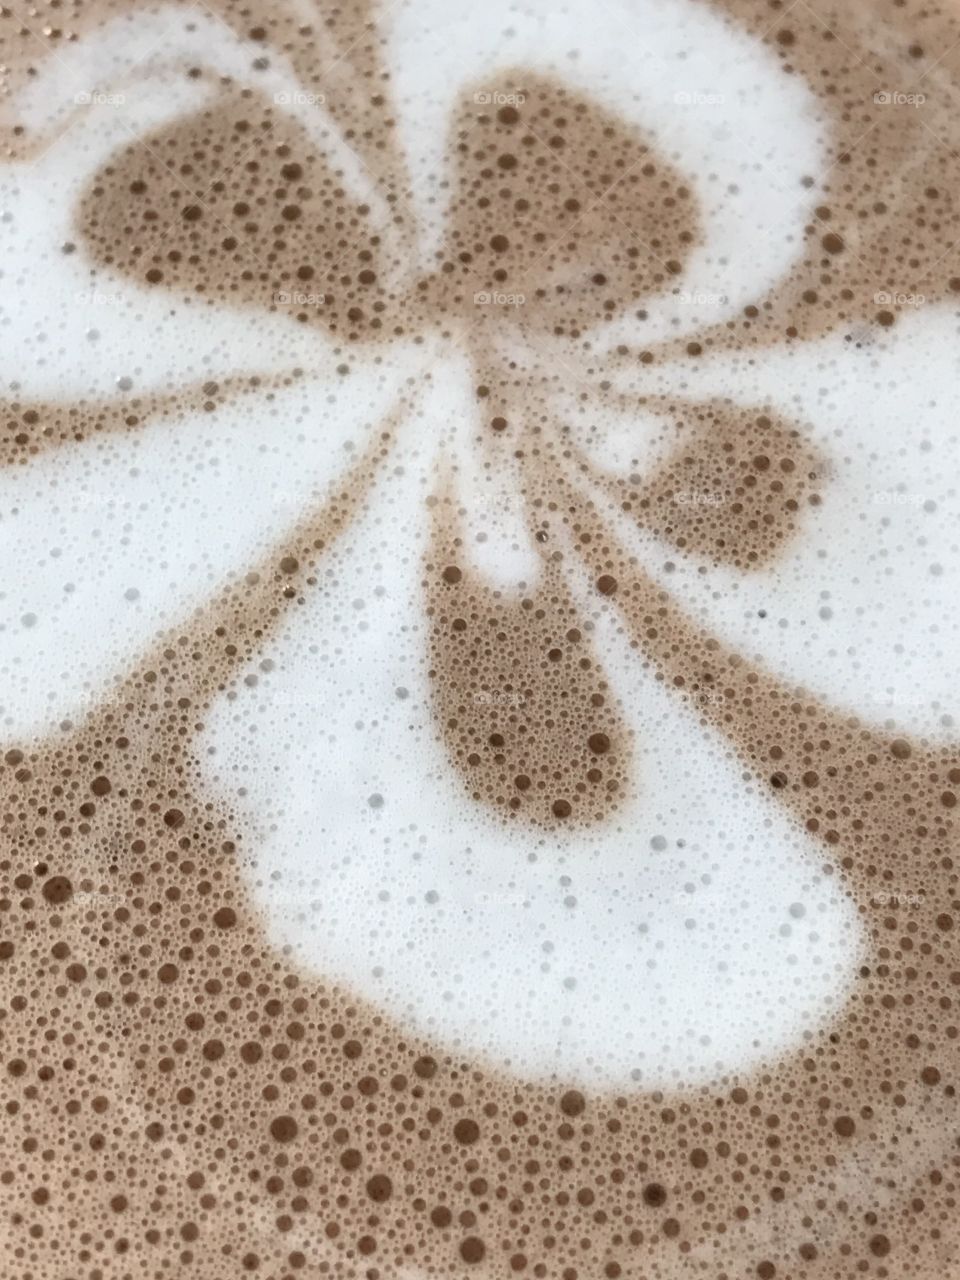 Close up of coffee mug